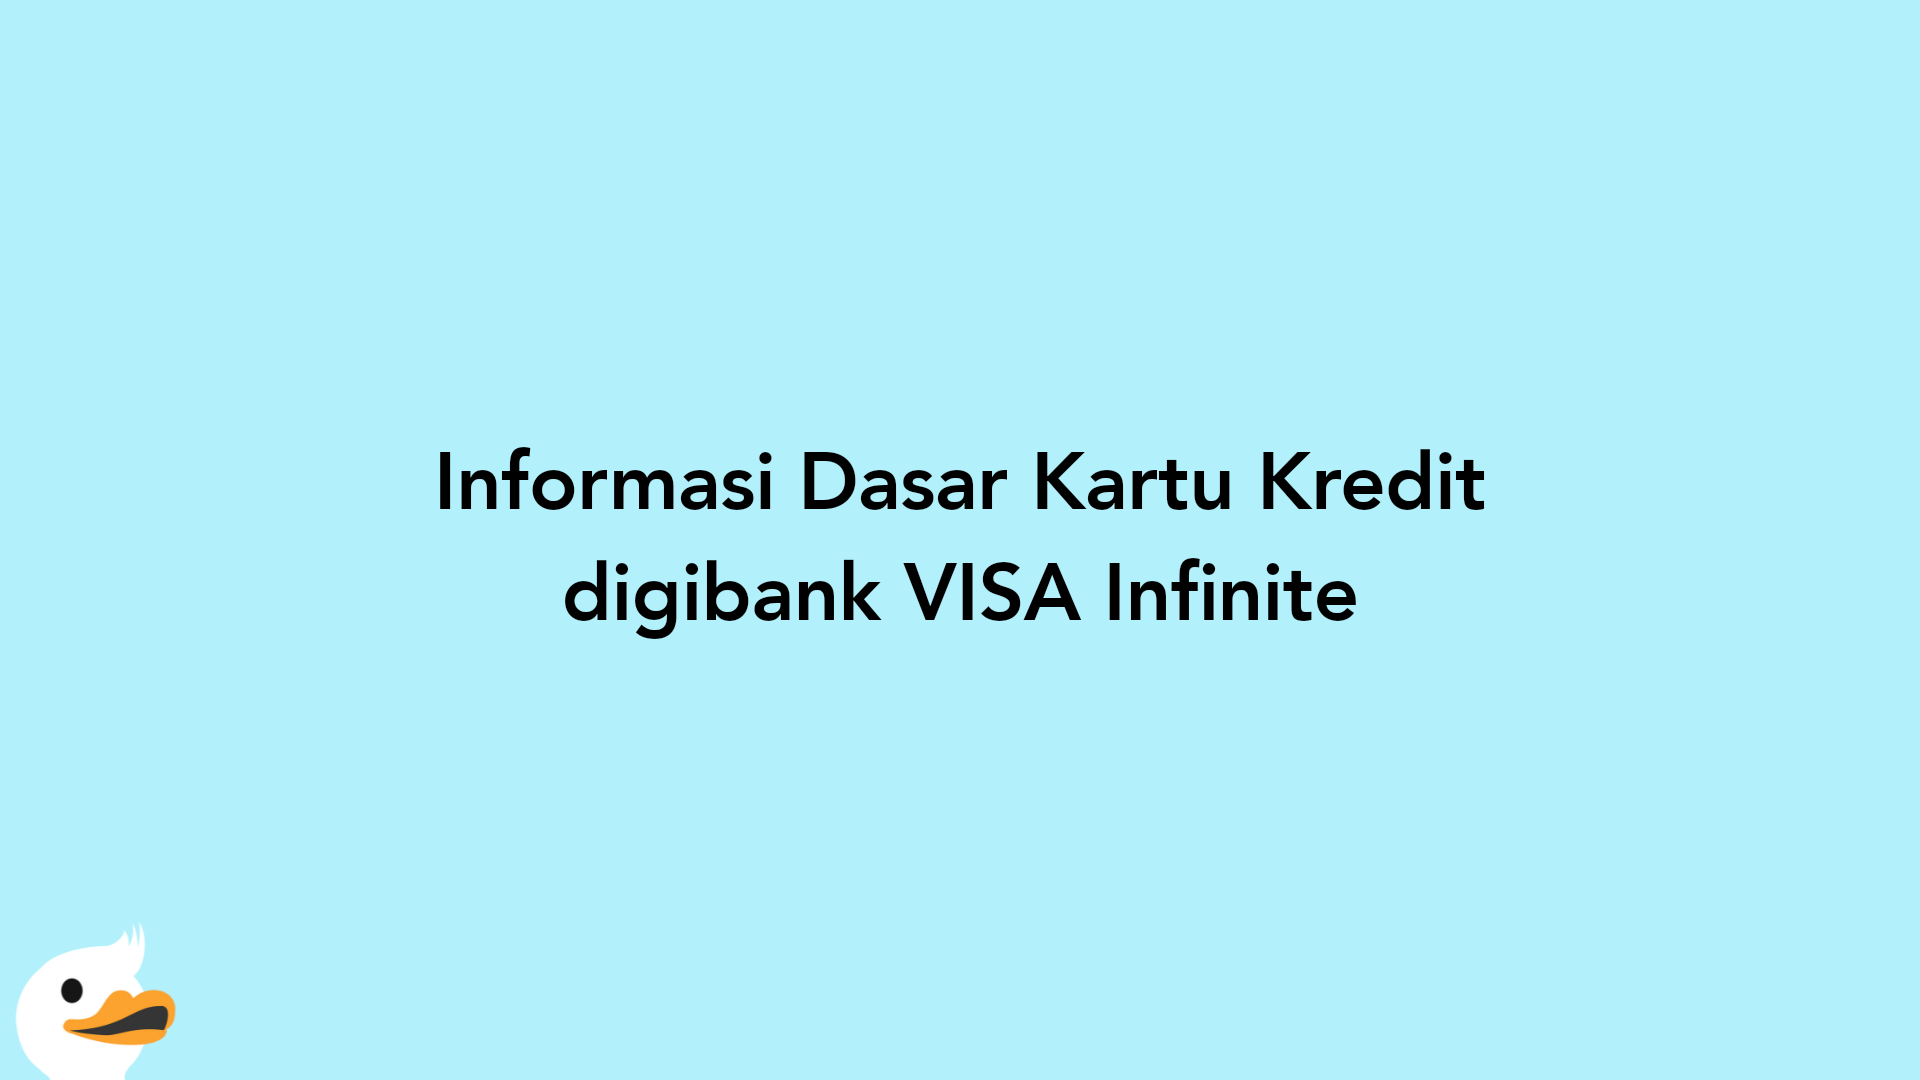 Informasi Dasar Kartu Kredit digibank VISA Infinite